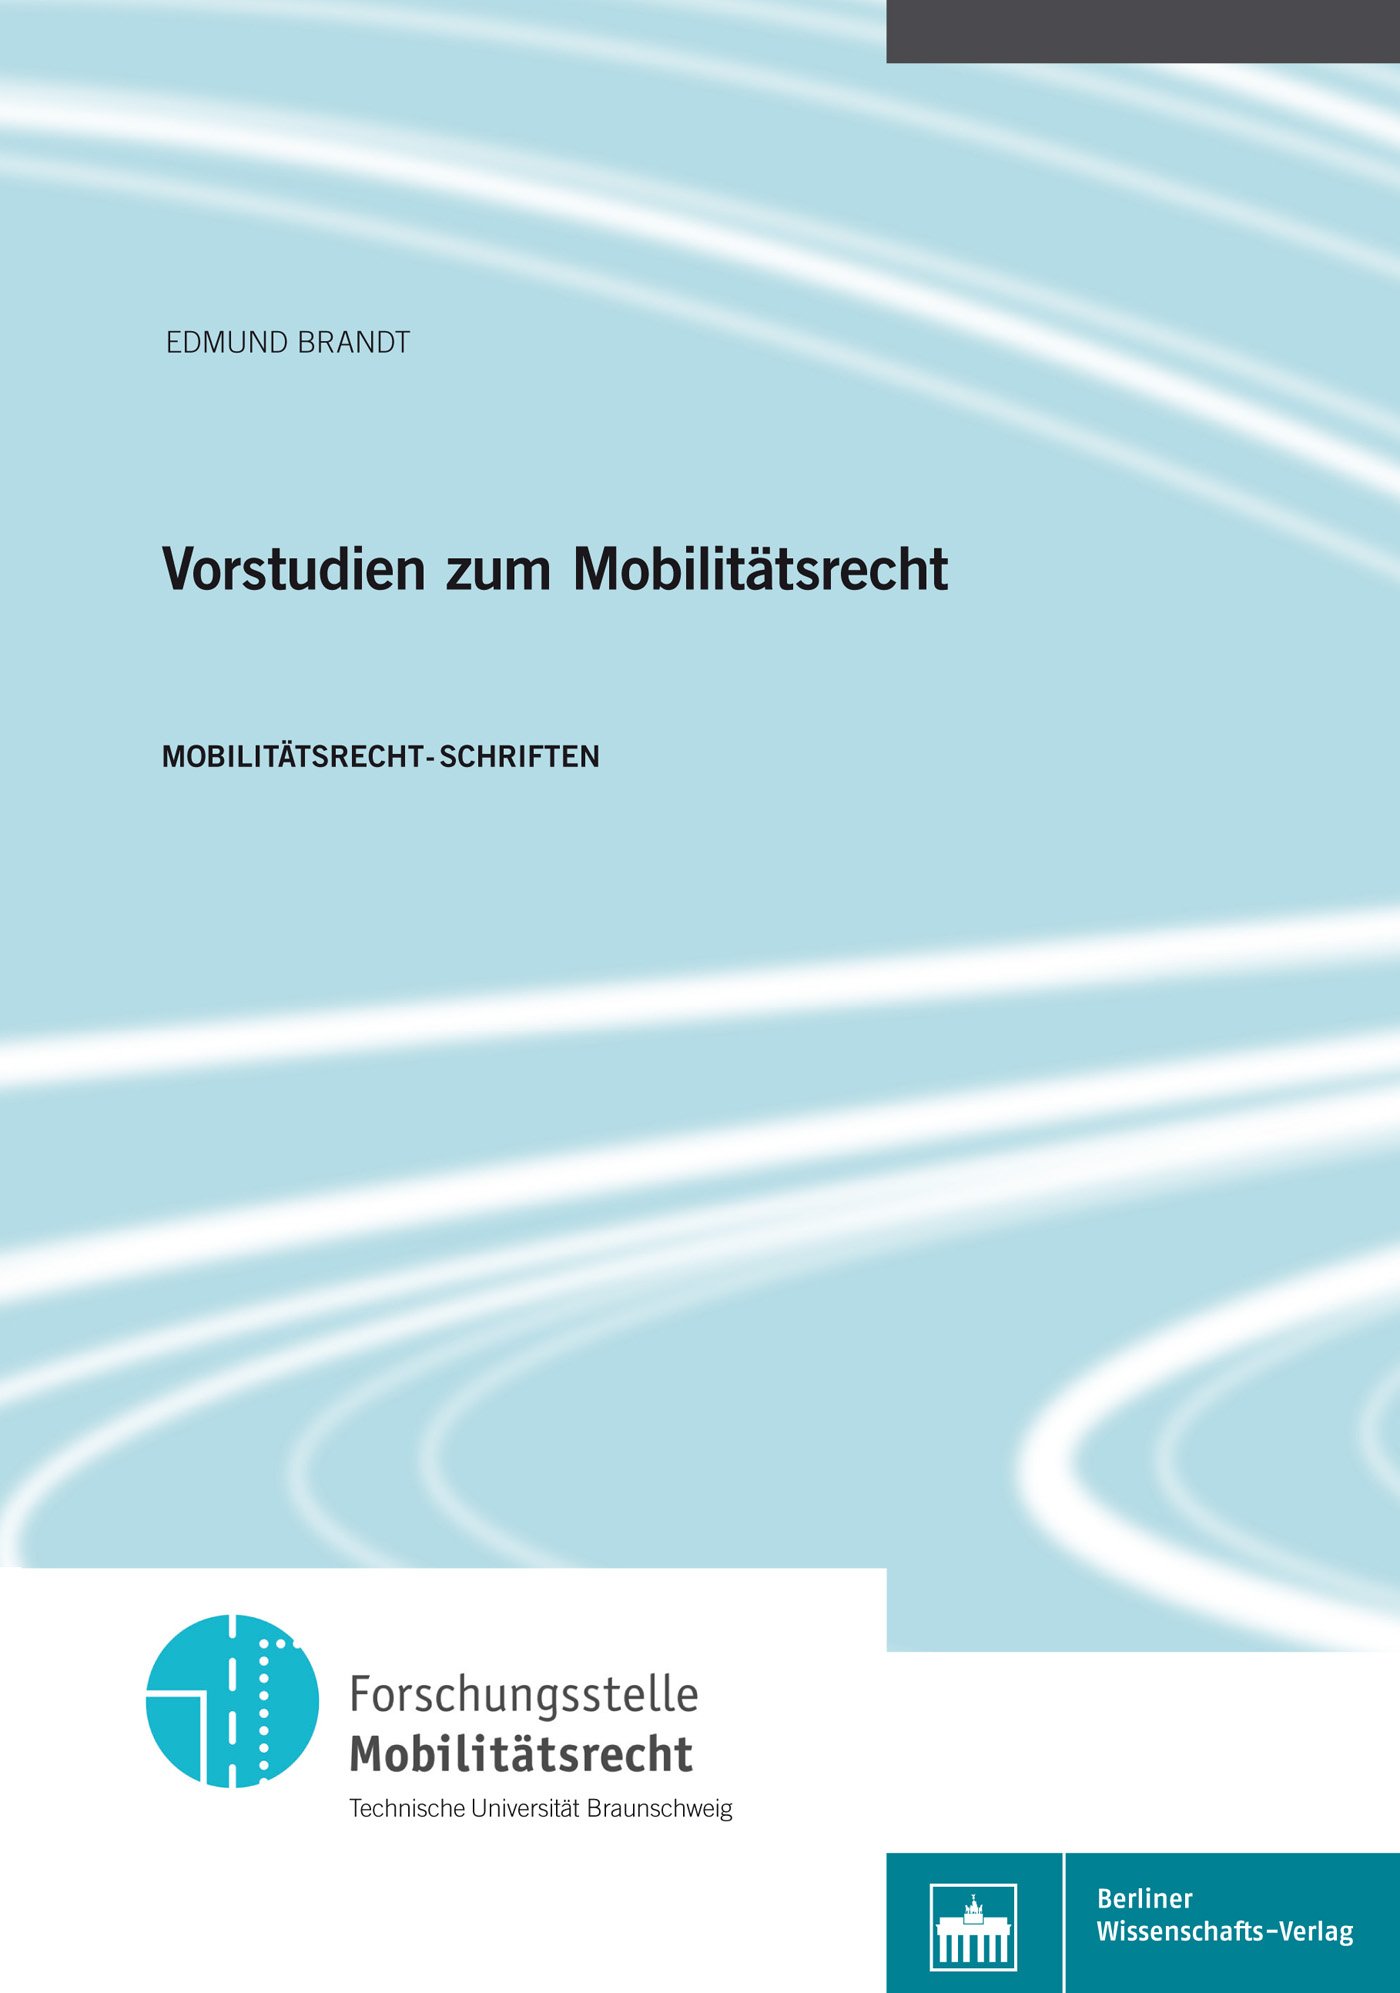 Vorstudien zum Mobilitätsrecht